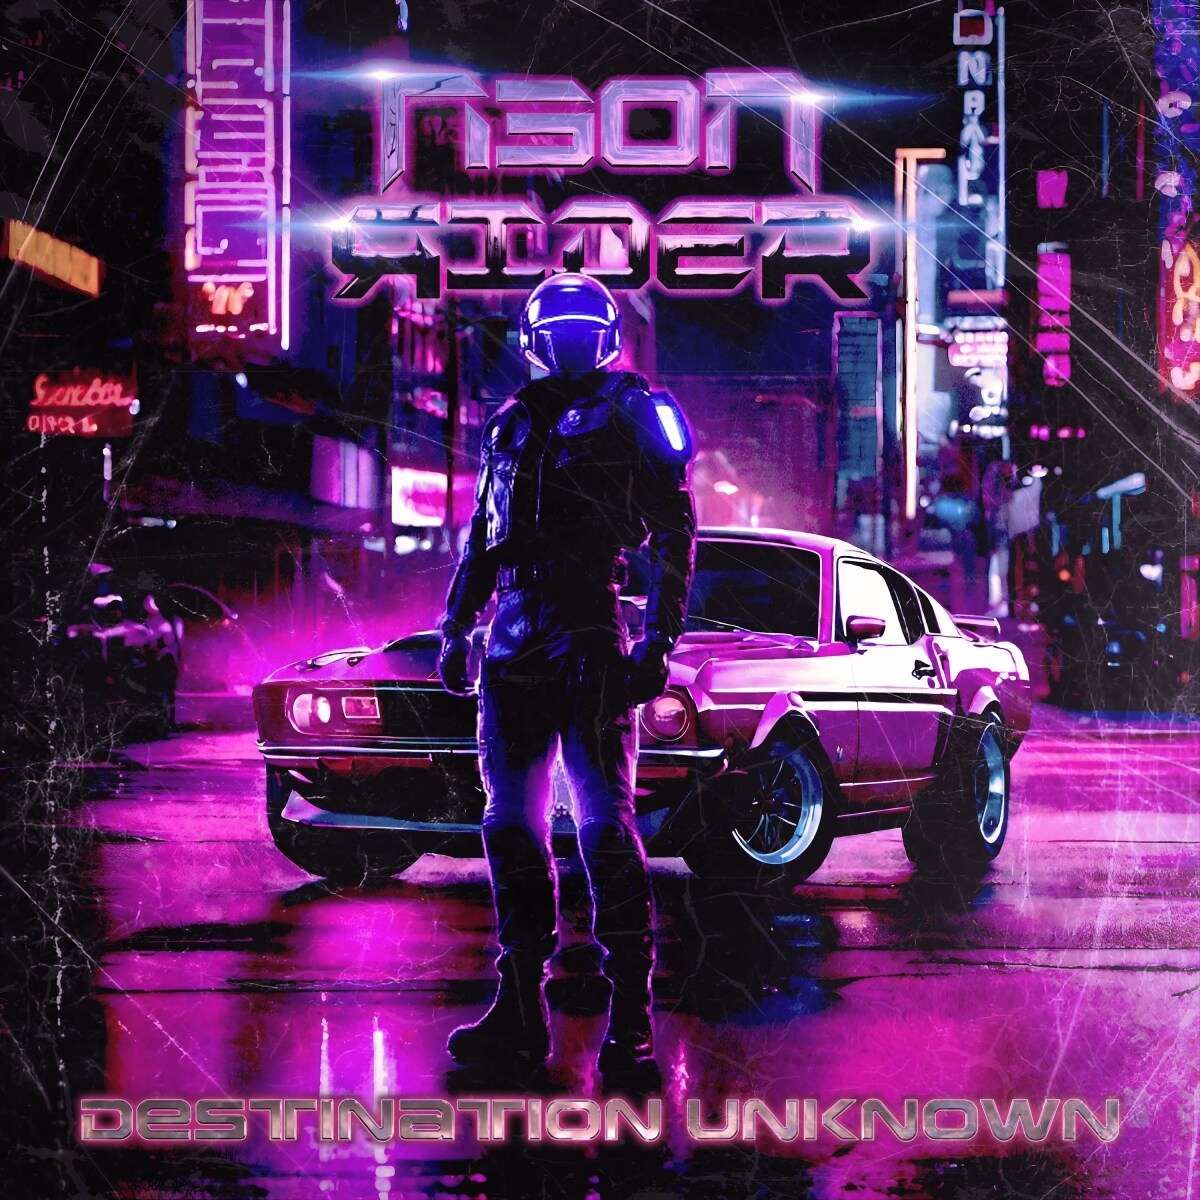 Neon Rider - Destination Unkown